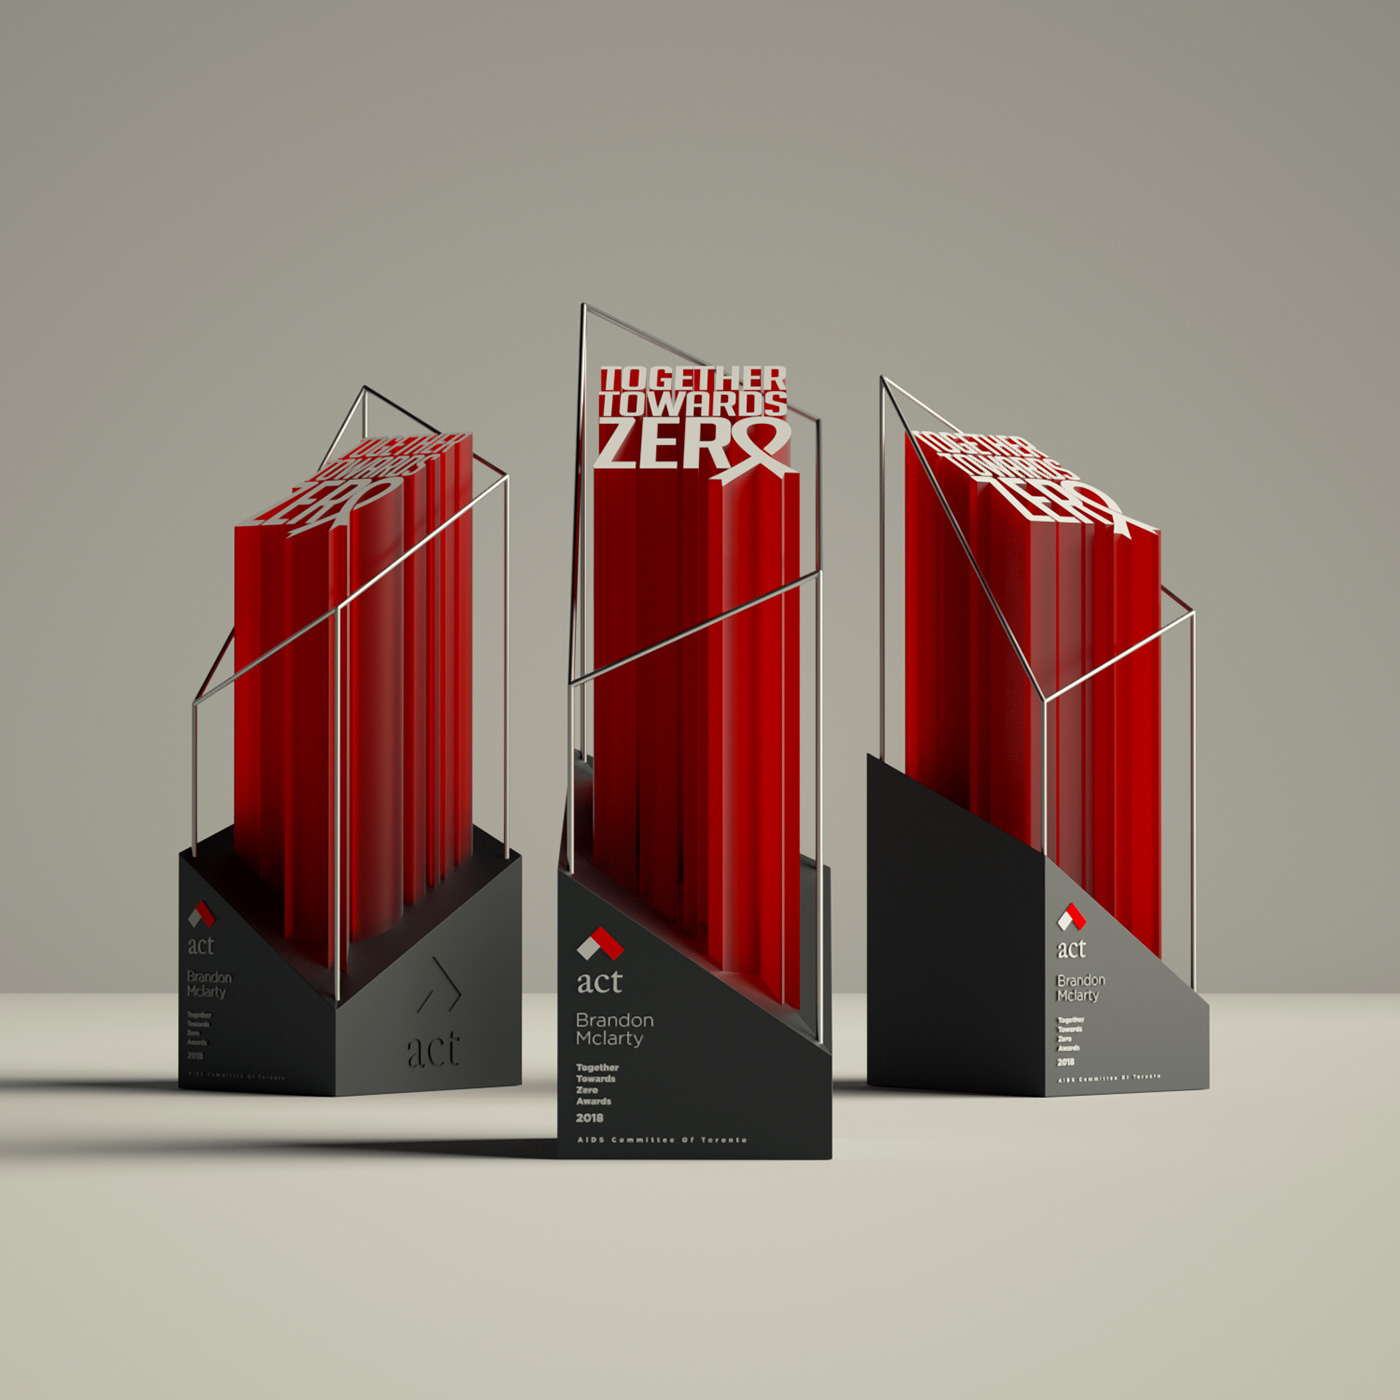 award trophy design 3D octane cinema4d ind industrial design 